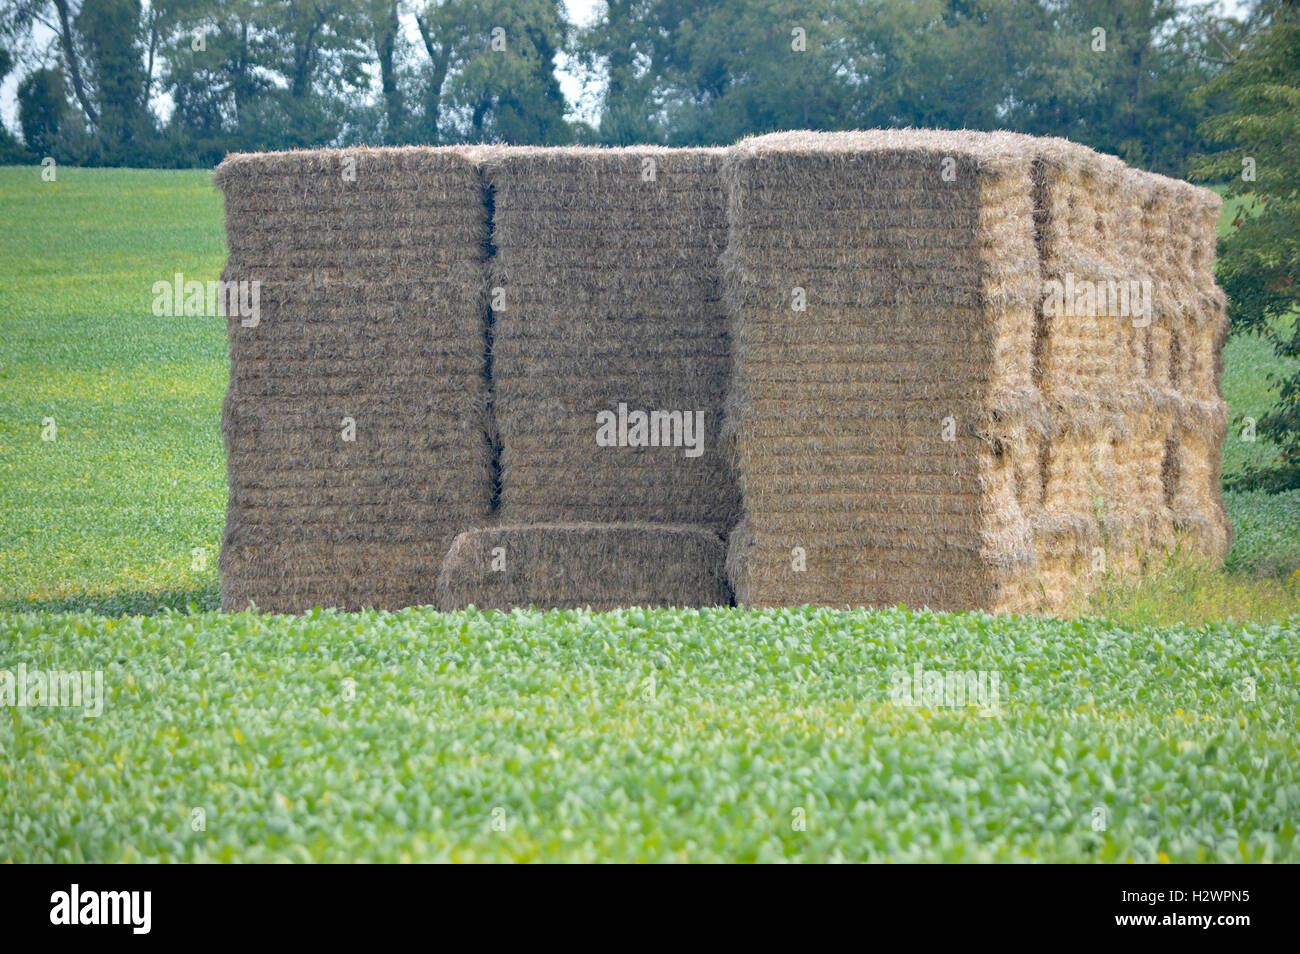 Grande pila di fieno in un campo di fagioli nelle vicinanze di Chesapeake in città, Cecil County, Maryland, USA. Vicino al C&D Canal. Foto Stock